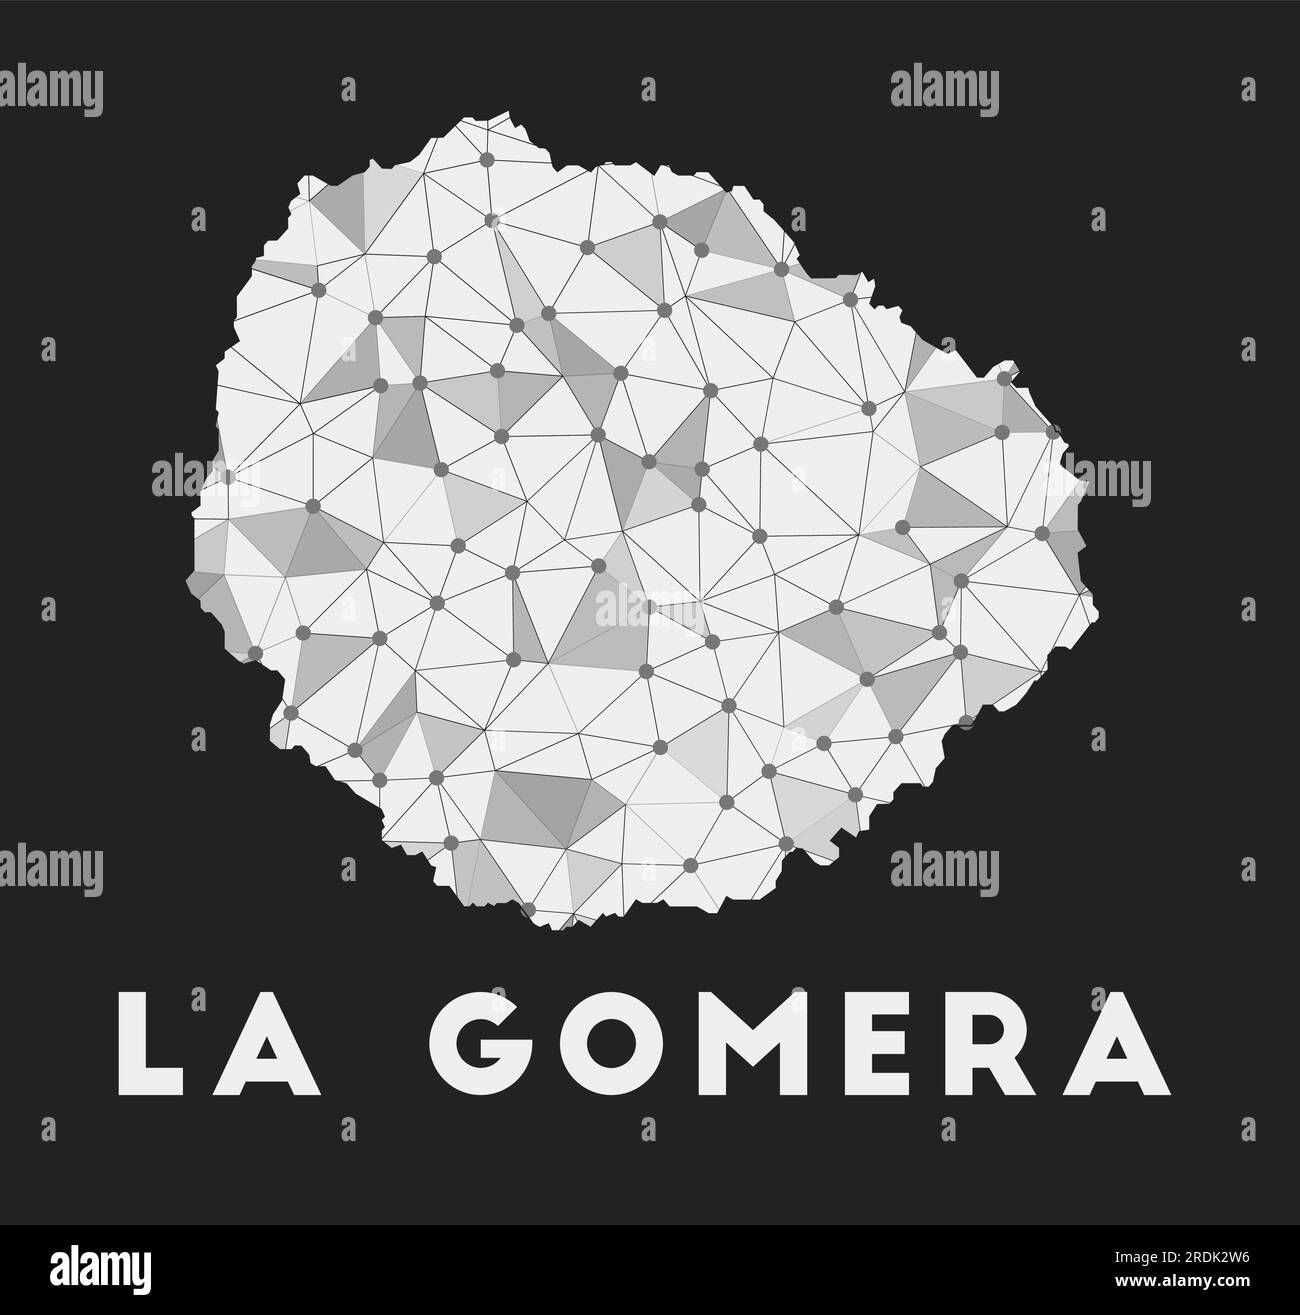 La Gomera - Karte des Kommunikationsnetzwerks der Insel. La Gomera: Trendiges geometrisches Design auf dunklem Hintergrund. Technologie, Internet, Netzwerk, Telekommunikation Stock Vektor